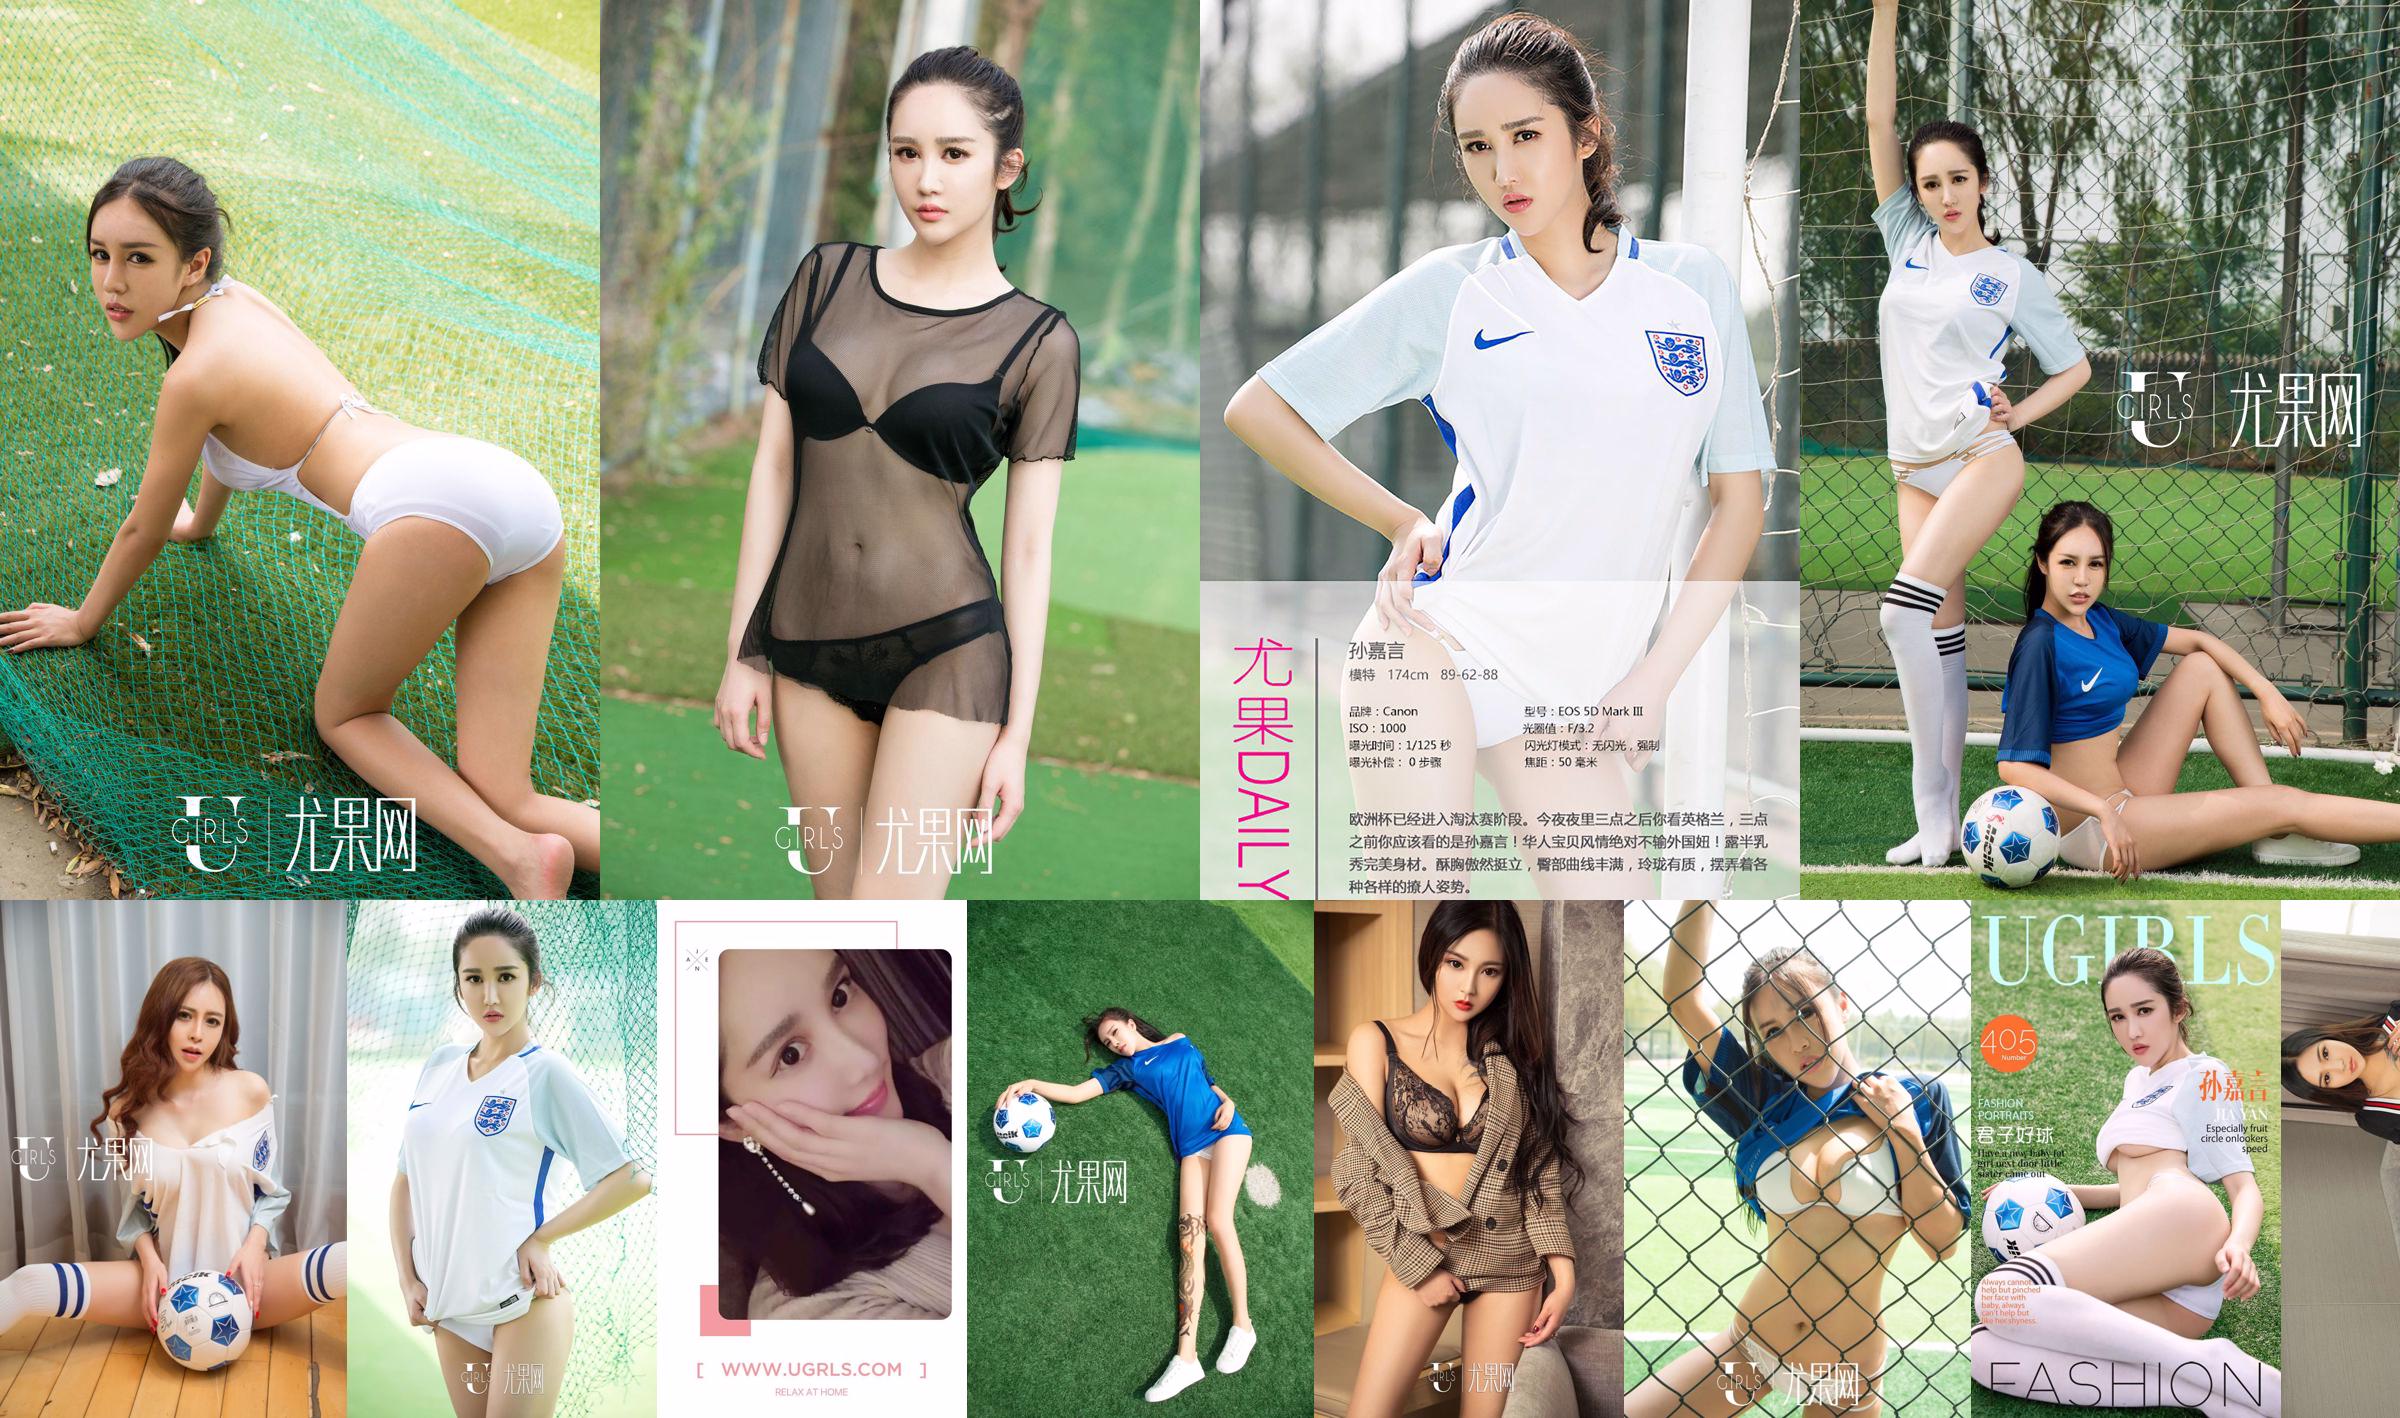 Sun Jiayan / Little Wisteria / Jin Xin / Li Yaying / Chun Jiao "Football Baby" [Ugirls] T019 No.5f6c0e Page 3